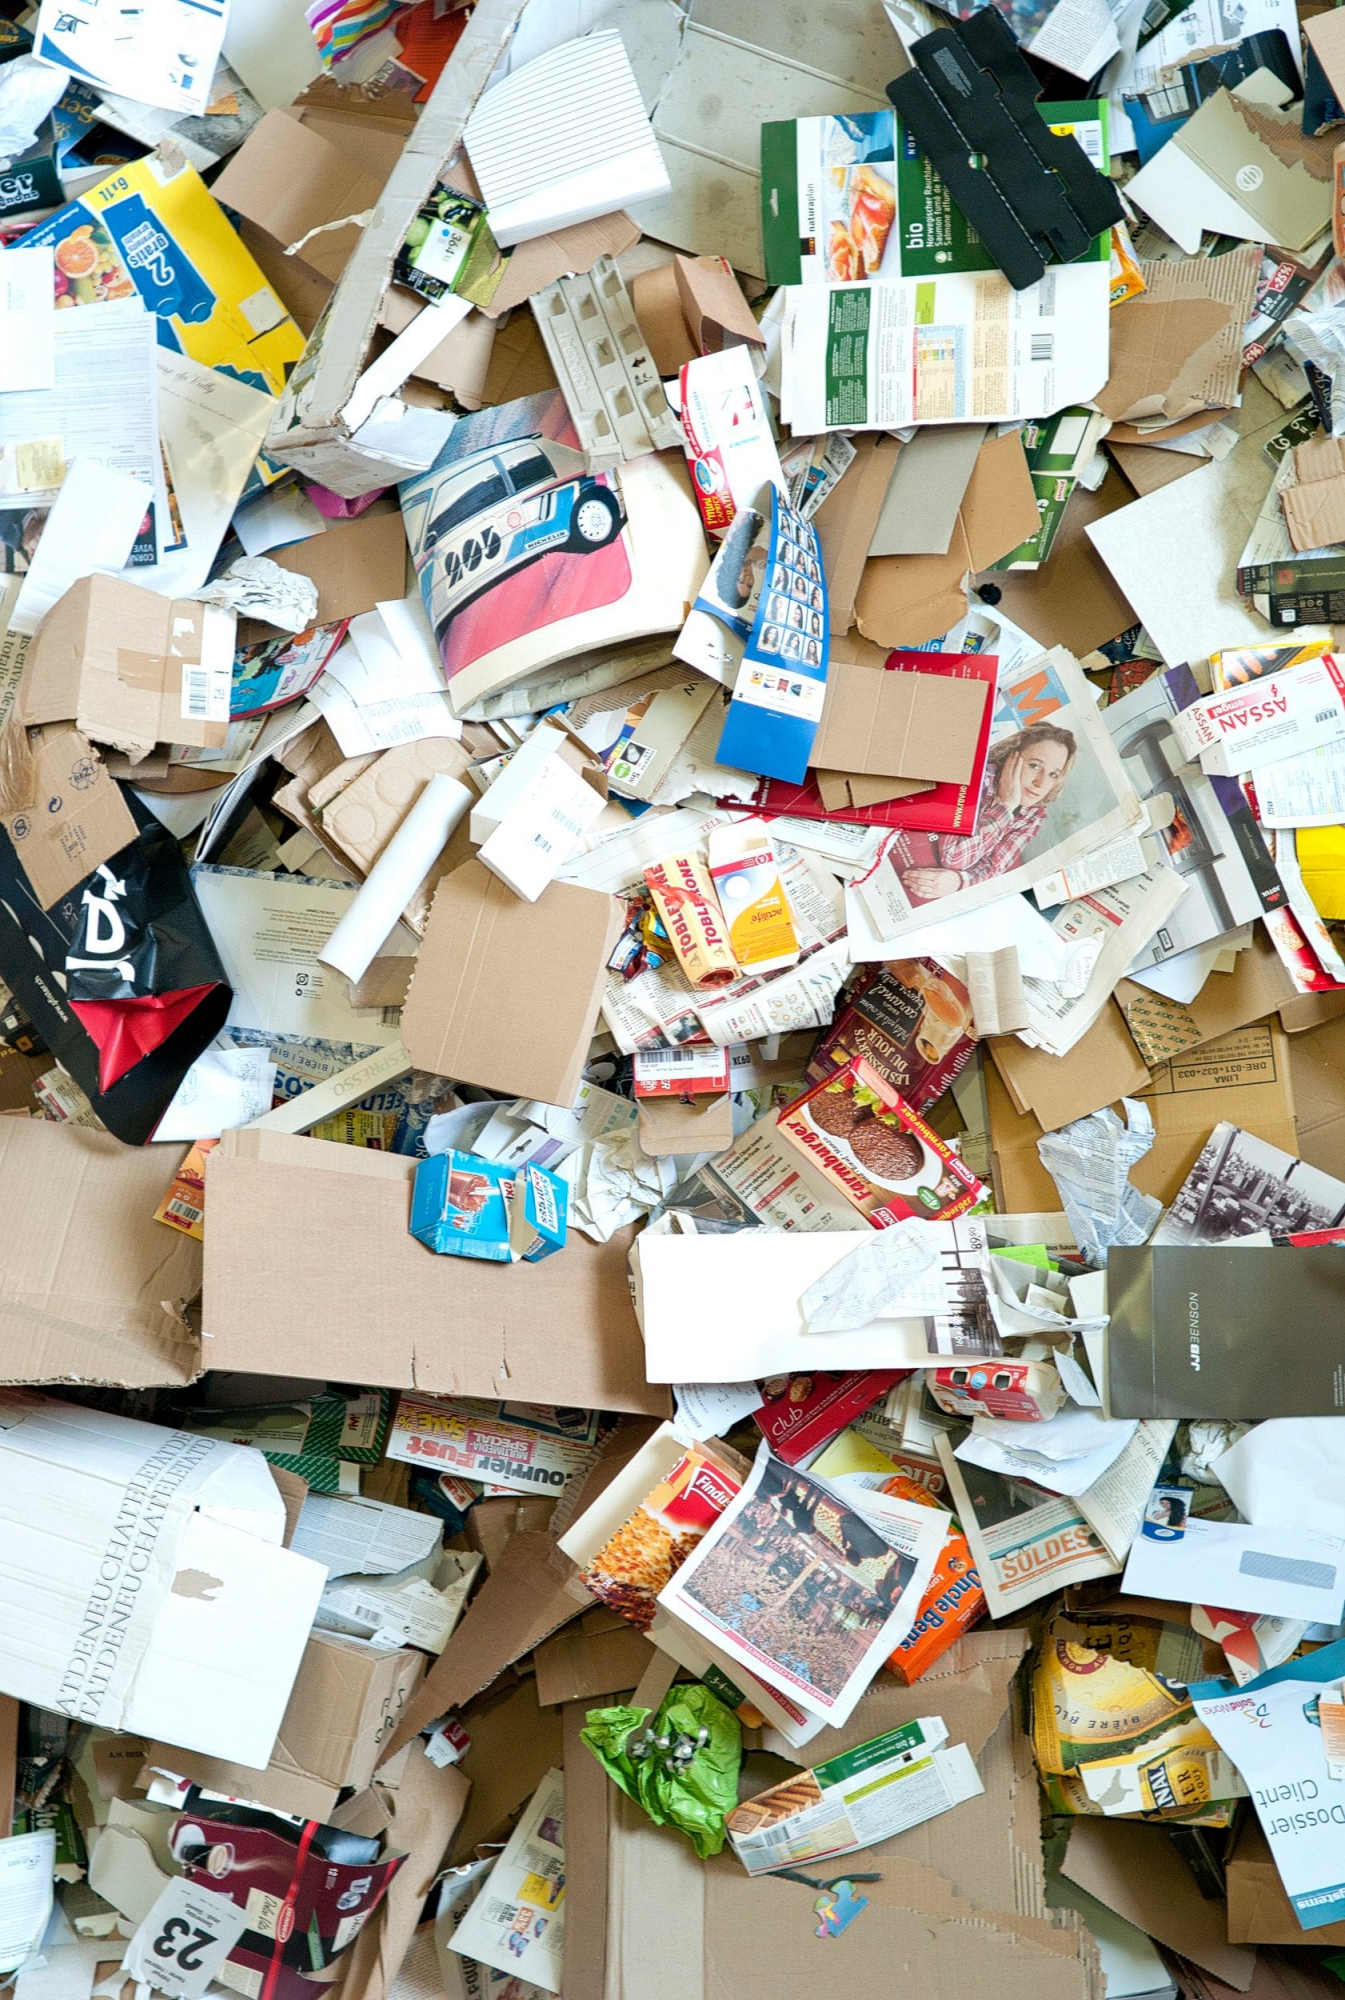 Vadec, poubelle, ordures, dechetterie, papier, verre, pet

Colombier, 12 03 2012
Photo David Marchon DECHETS